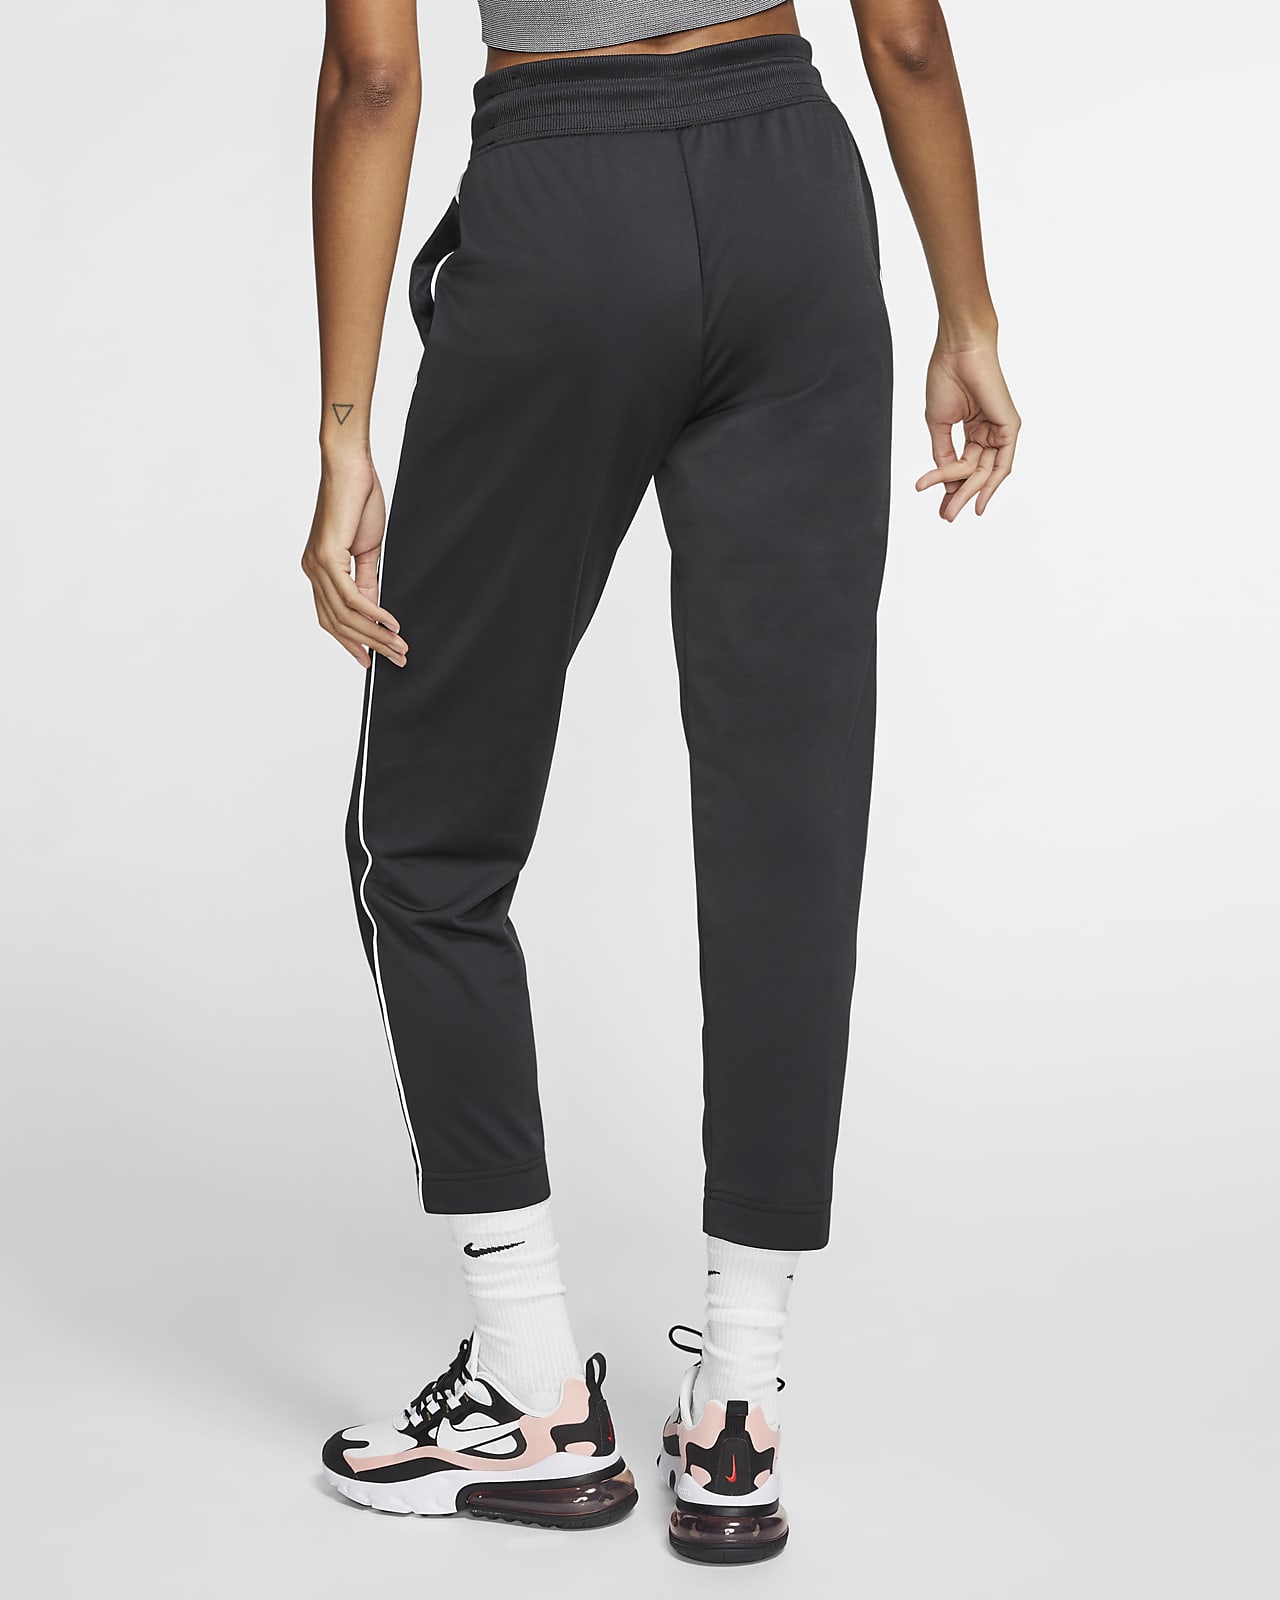 Pantalones para mujer Nike Sportswear Heritage. Nike.com